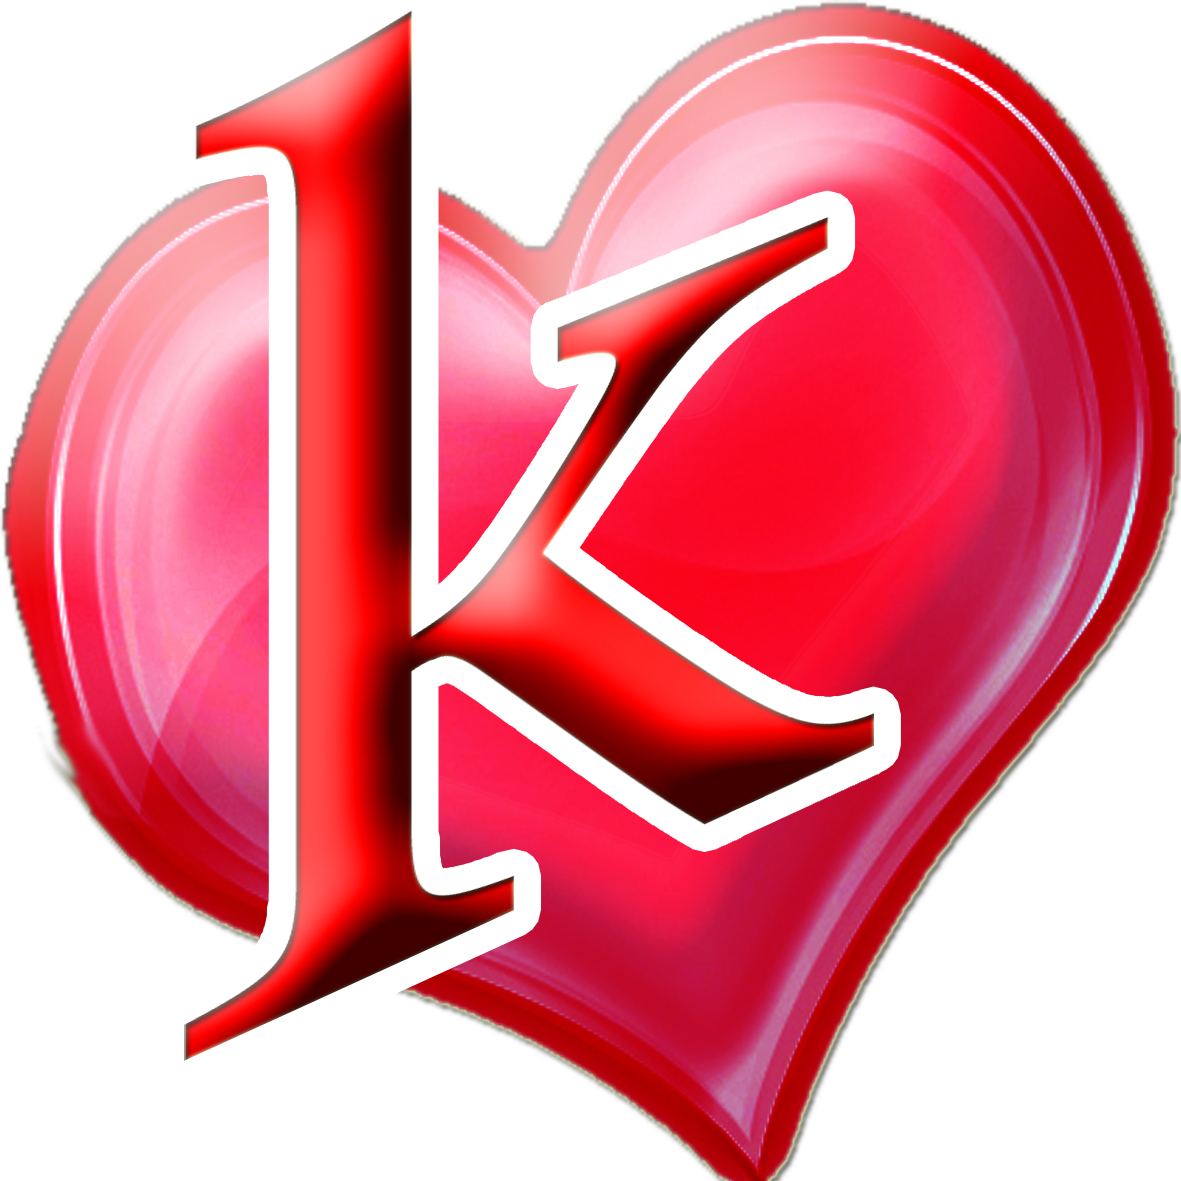 حرف K مكتوب عليها رمزيات رومانسيه بالانجليزى لحرف K افخم فخمه